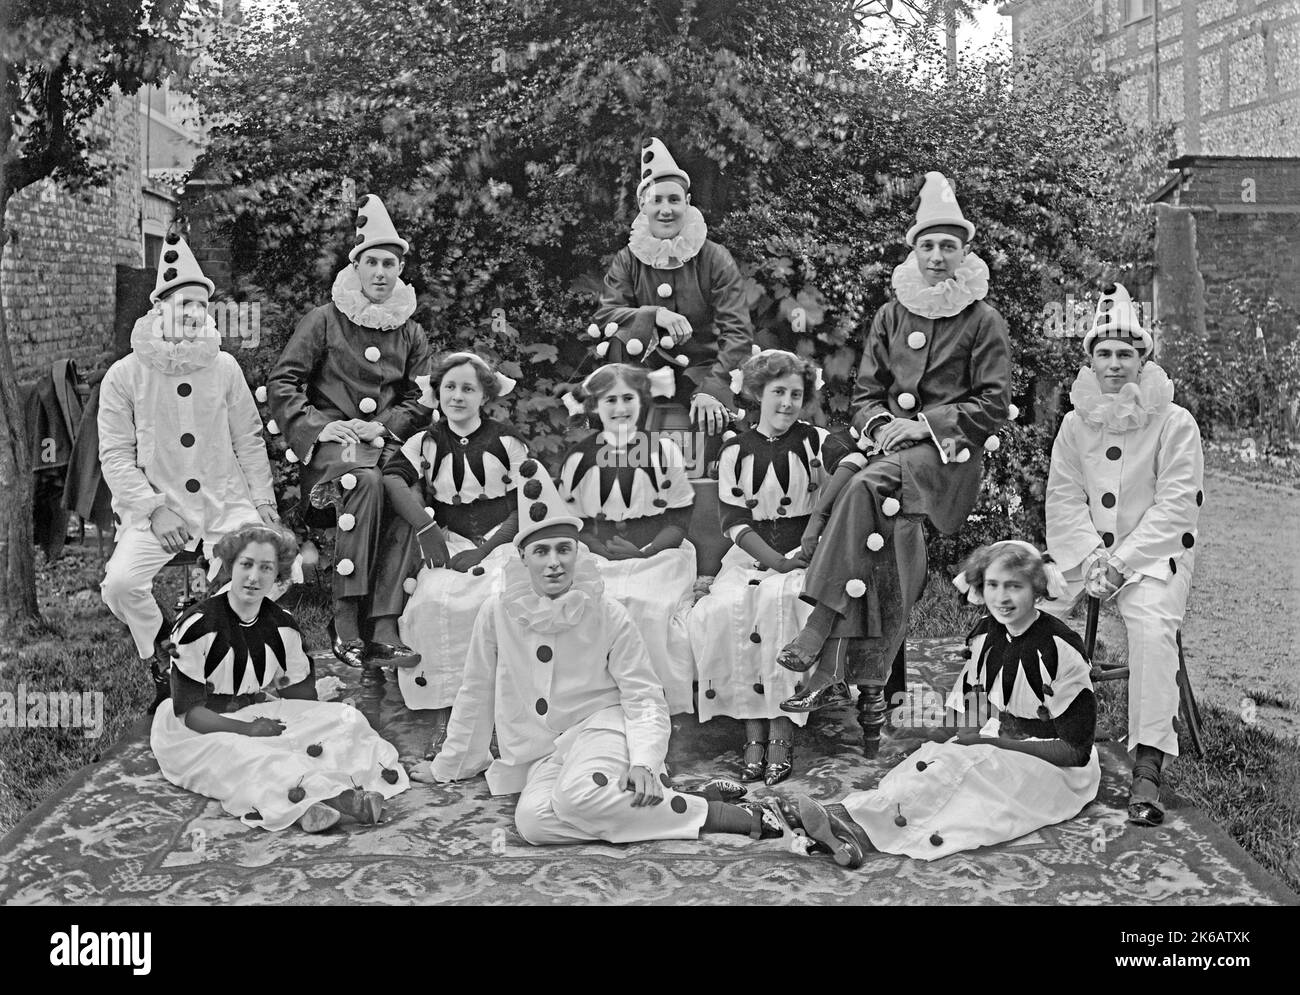 Eine Gruppe von Männern und Frauen in Pierrot (Clown) Kostümen, Norfolk, England, Großbritannien c. 1930. Ein Pierrot ist eine Figur der Pantomime und der Commedia dell’arte, deren Ursprünge in der italienischen Truppe des späten 17. Jahrhunderts liegen, die in Paris auftrat und als Comédie-Italienne bekannt ist. Dies ist einem alten Schwarz-Weiß-Negativ entnommen – einem Vintage 1920s/30s-Foto. Stockfoto